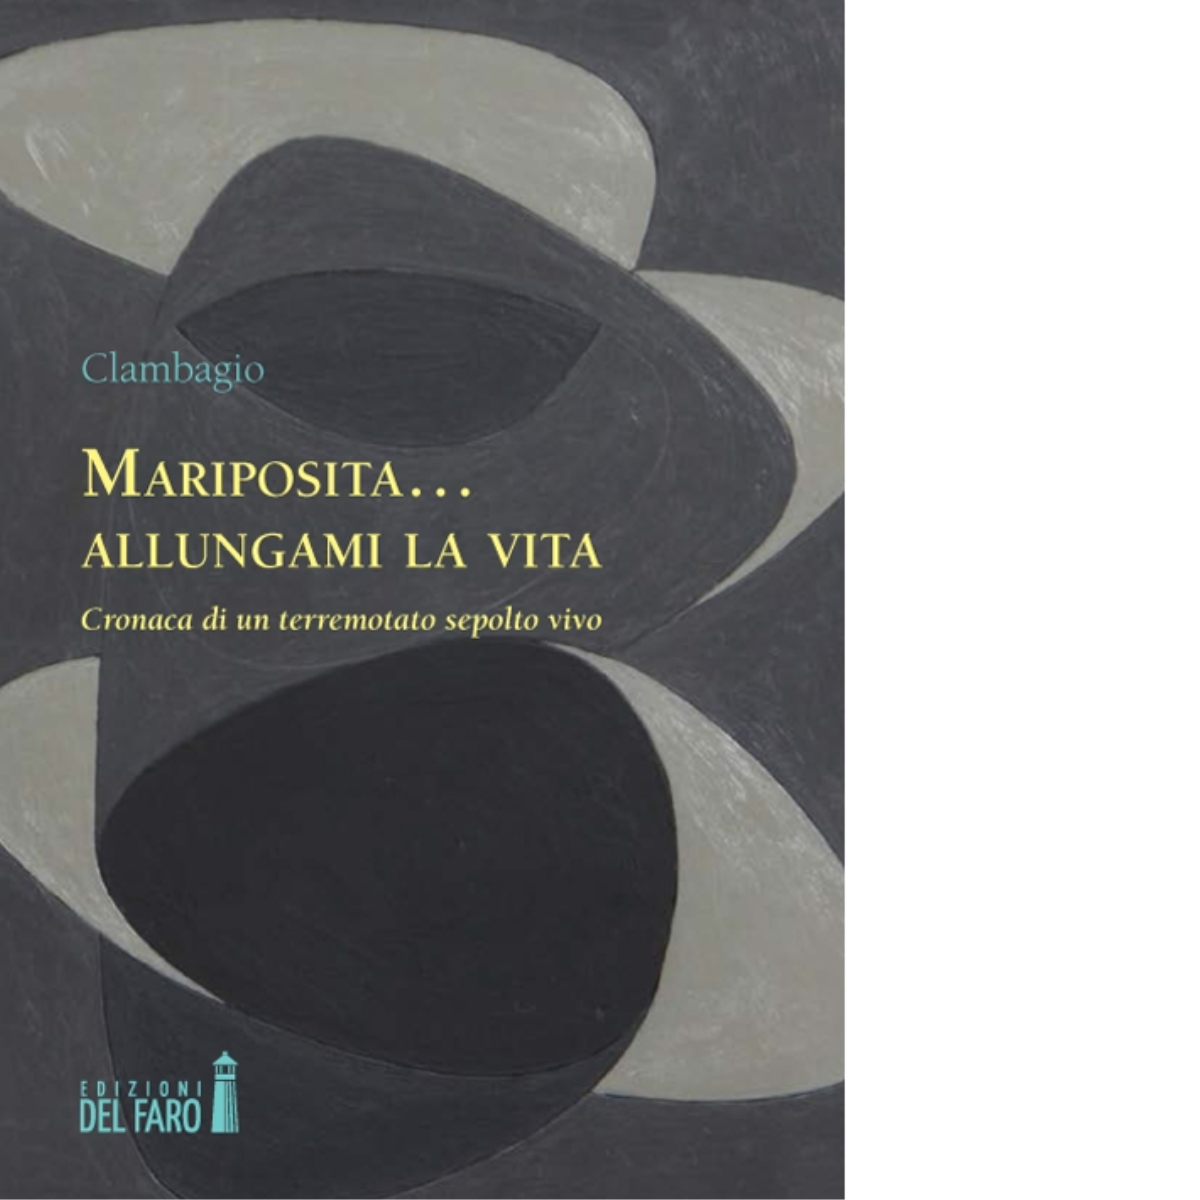 Mariposita... allungami la vita di Clambagio - Edizioni Del faro, 2015 libro usato